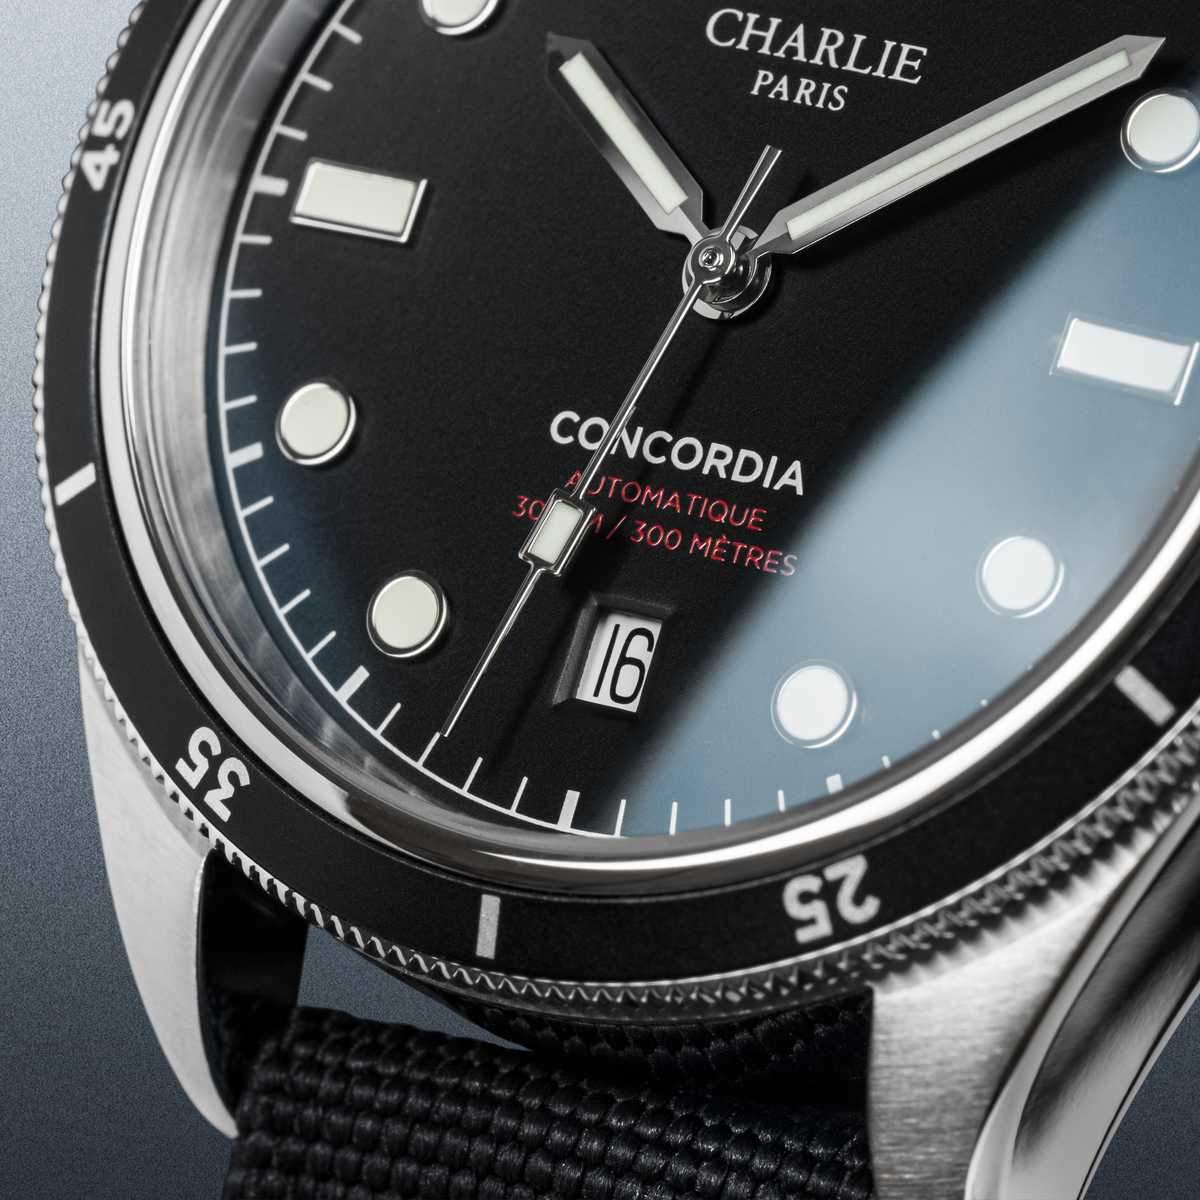 Concordia - Automatique - Noir - Charlie Paris